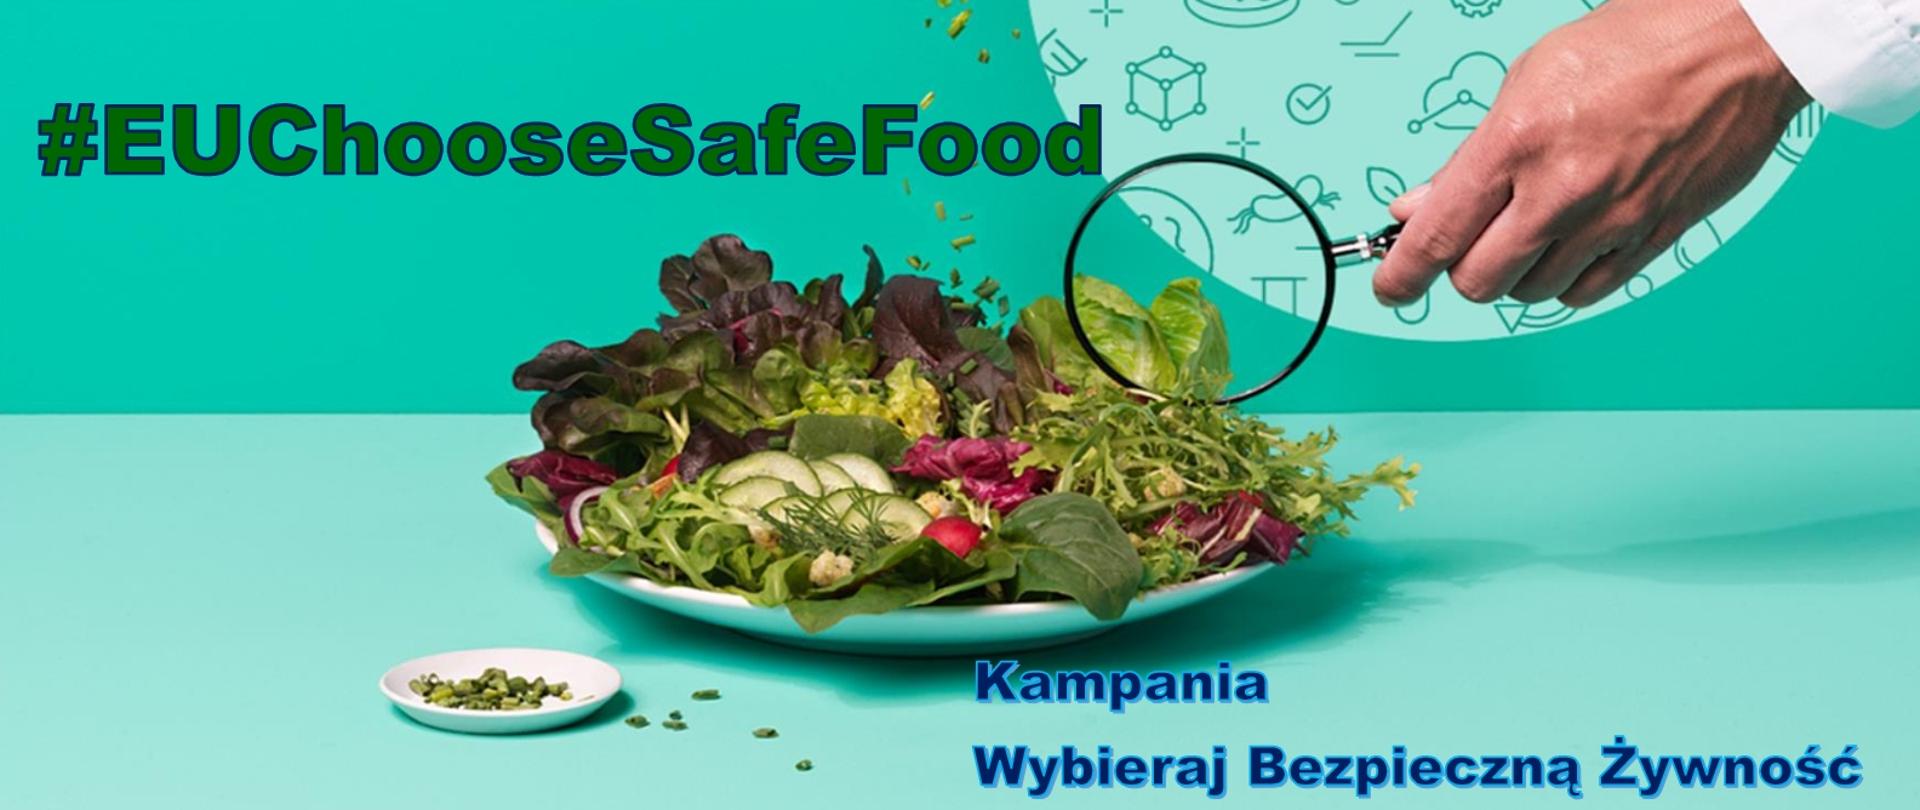 na stole talerz wypełniony różnymi warzywami po prawej stronie dłoń z lupą u góry po lewo napis #EUChooseSafeFood po prawej na dole napis kampania wybieraj bezpieczną żywność